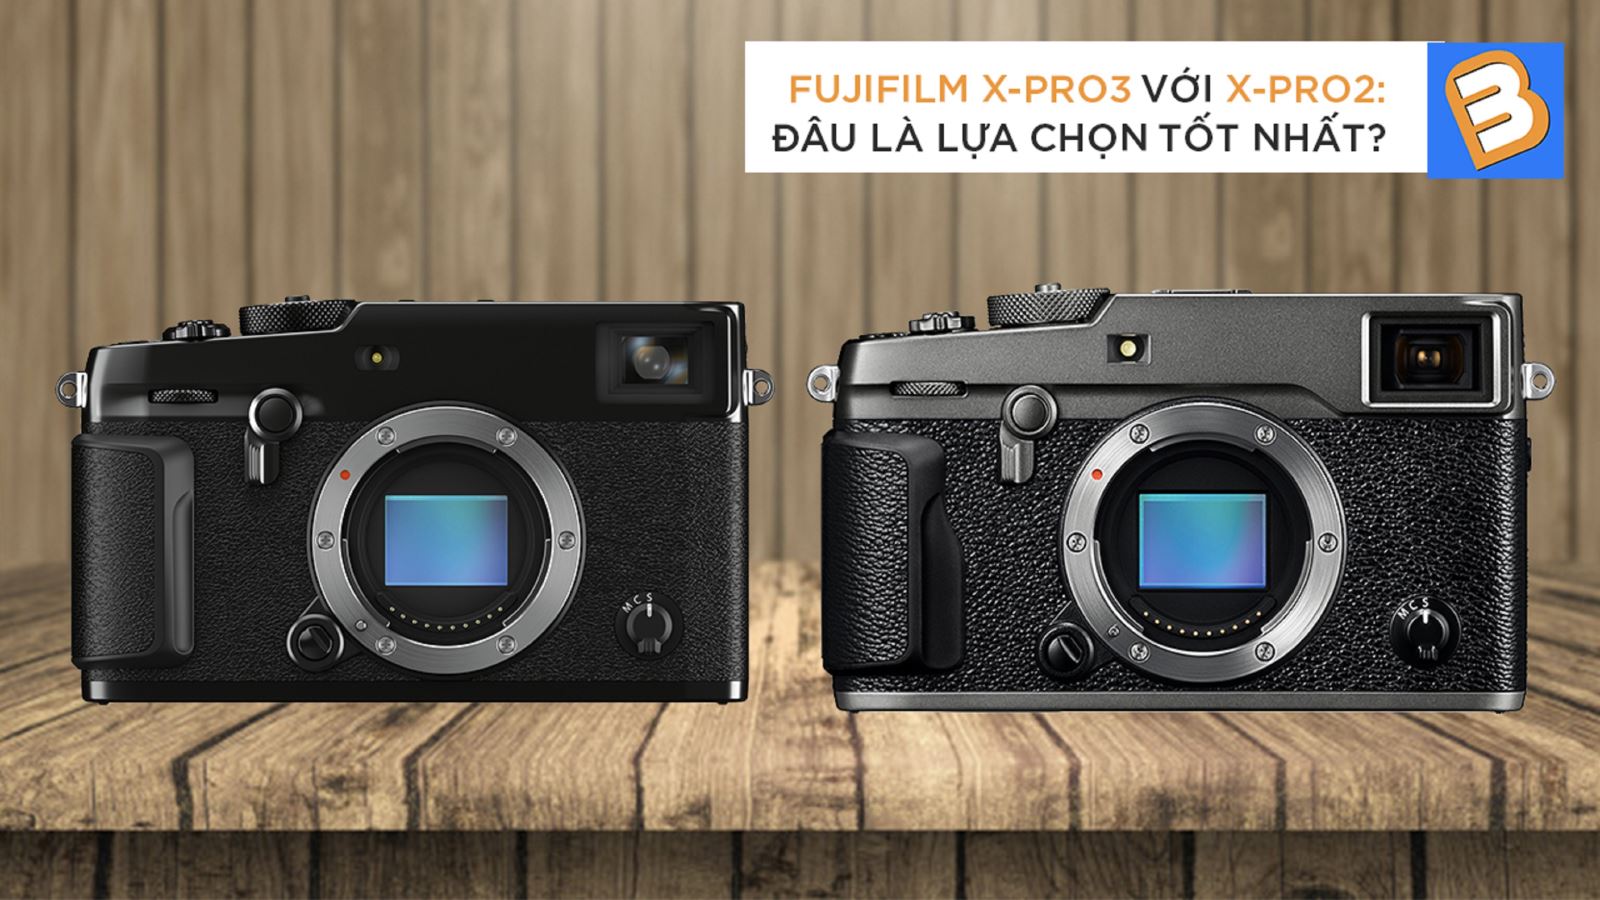 Fujifilm X-Pro3 với X-Pro2: Đâu là lựa chọn tốt nhất?